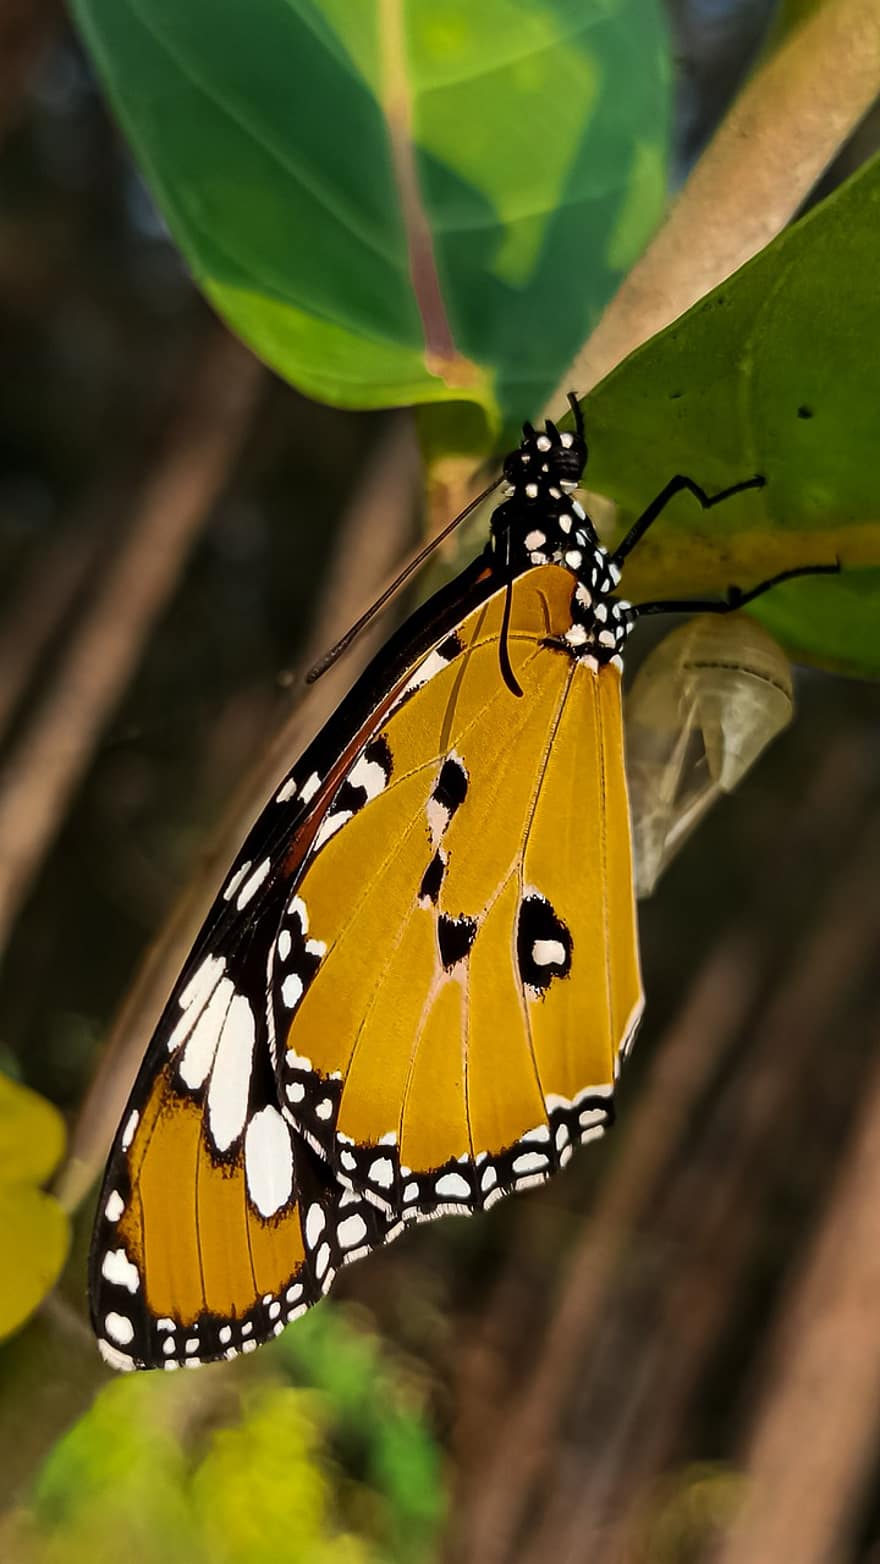 バタフライ、昆虫、翼のある昆虫、蝶の羽、動物相、自然、閉じる、マルチカラー、マクロ、緑色、黄